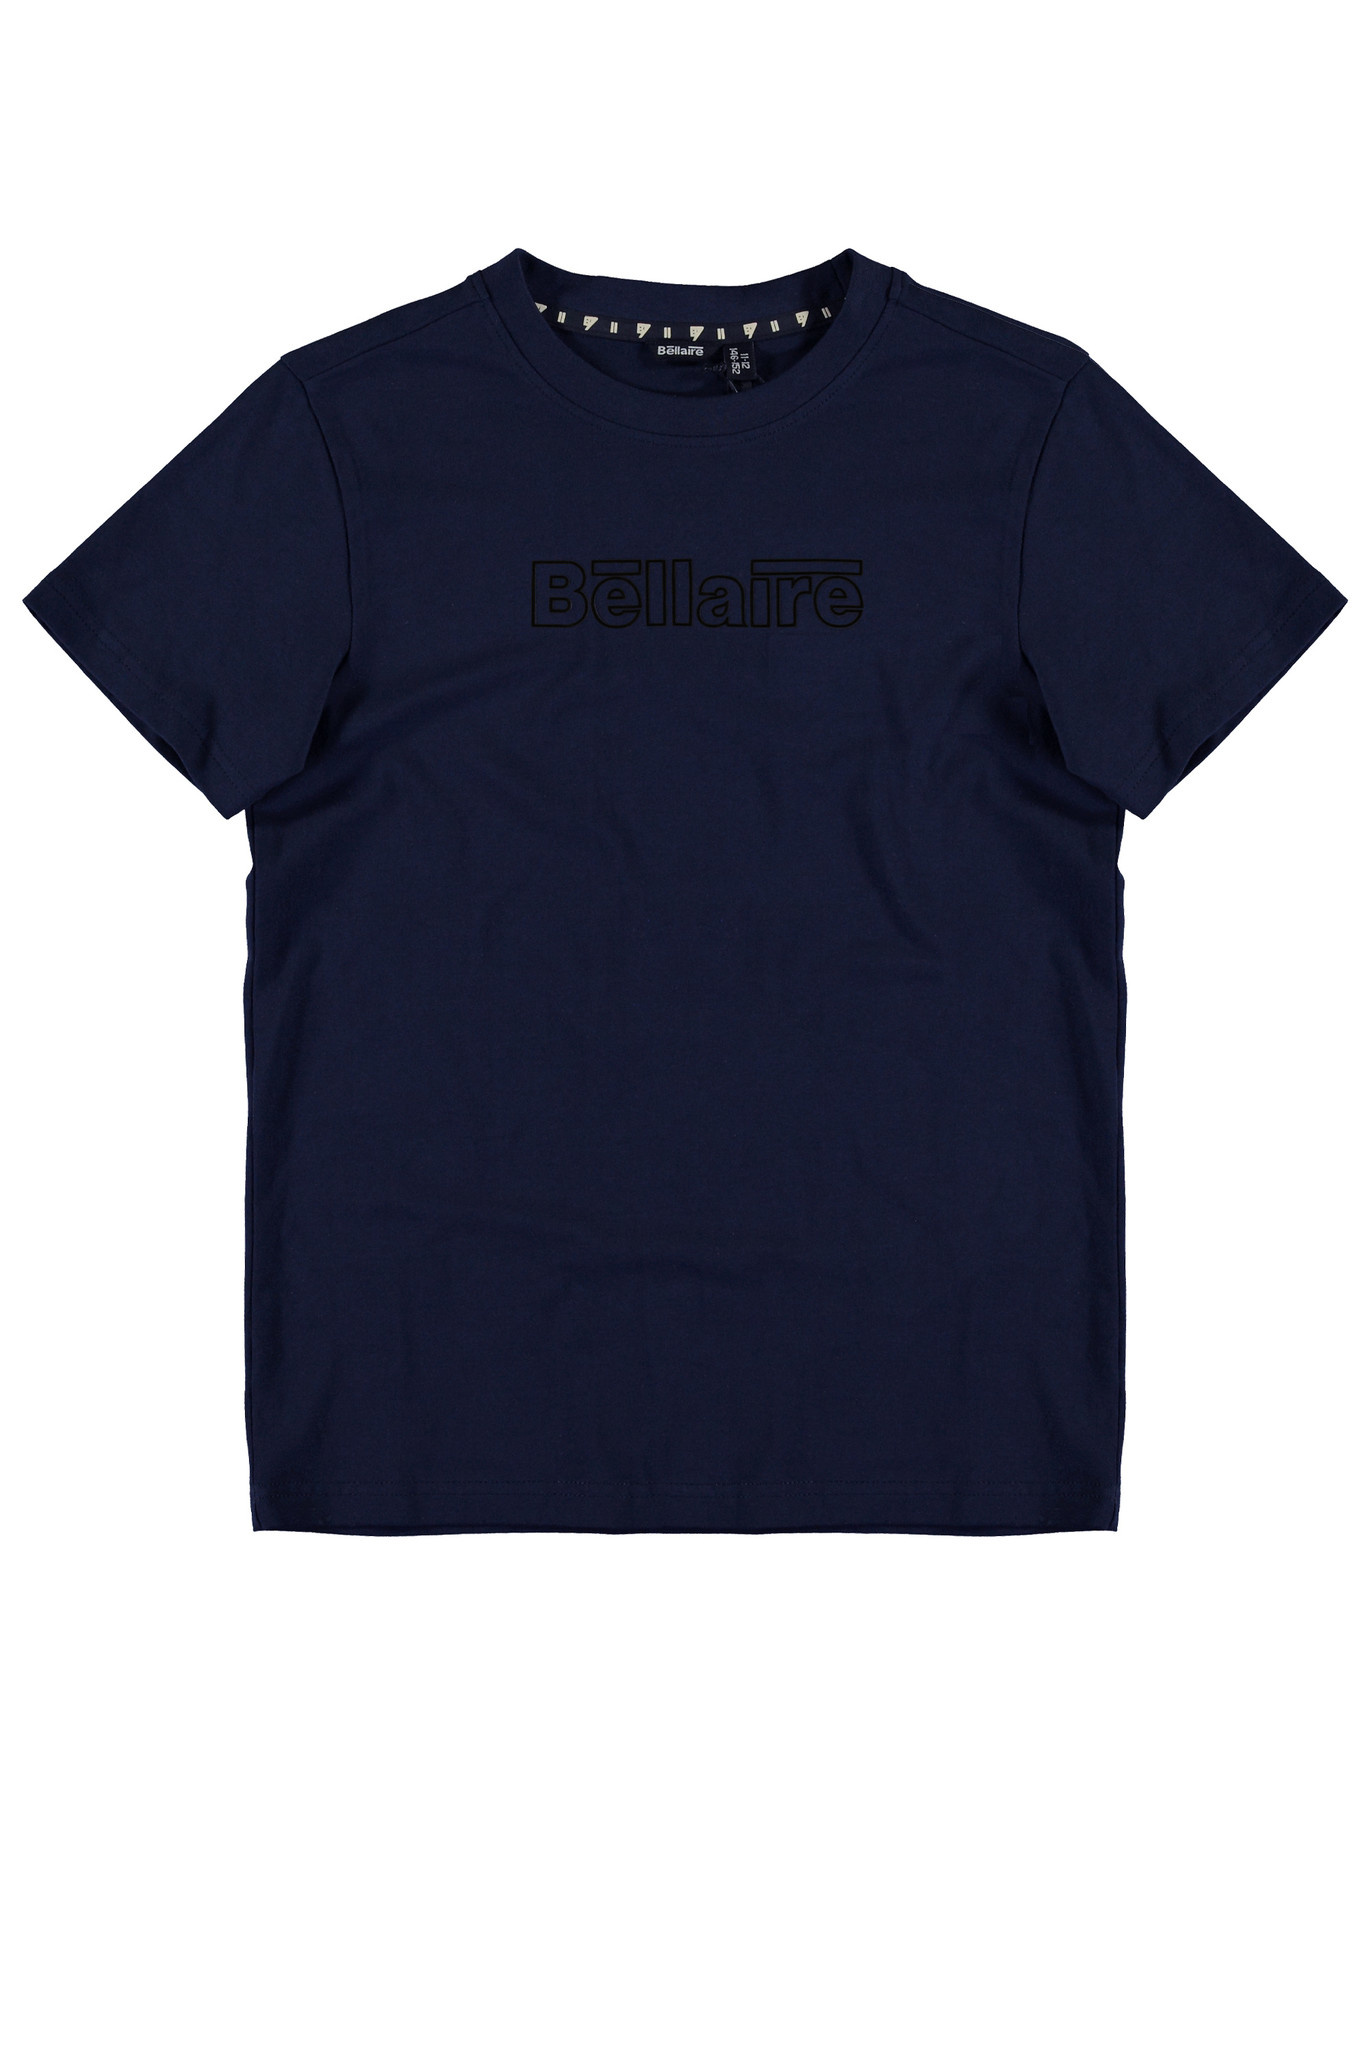 Bellaire jongens t-shirt Noos Navy Blazer